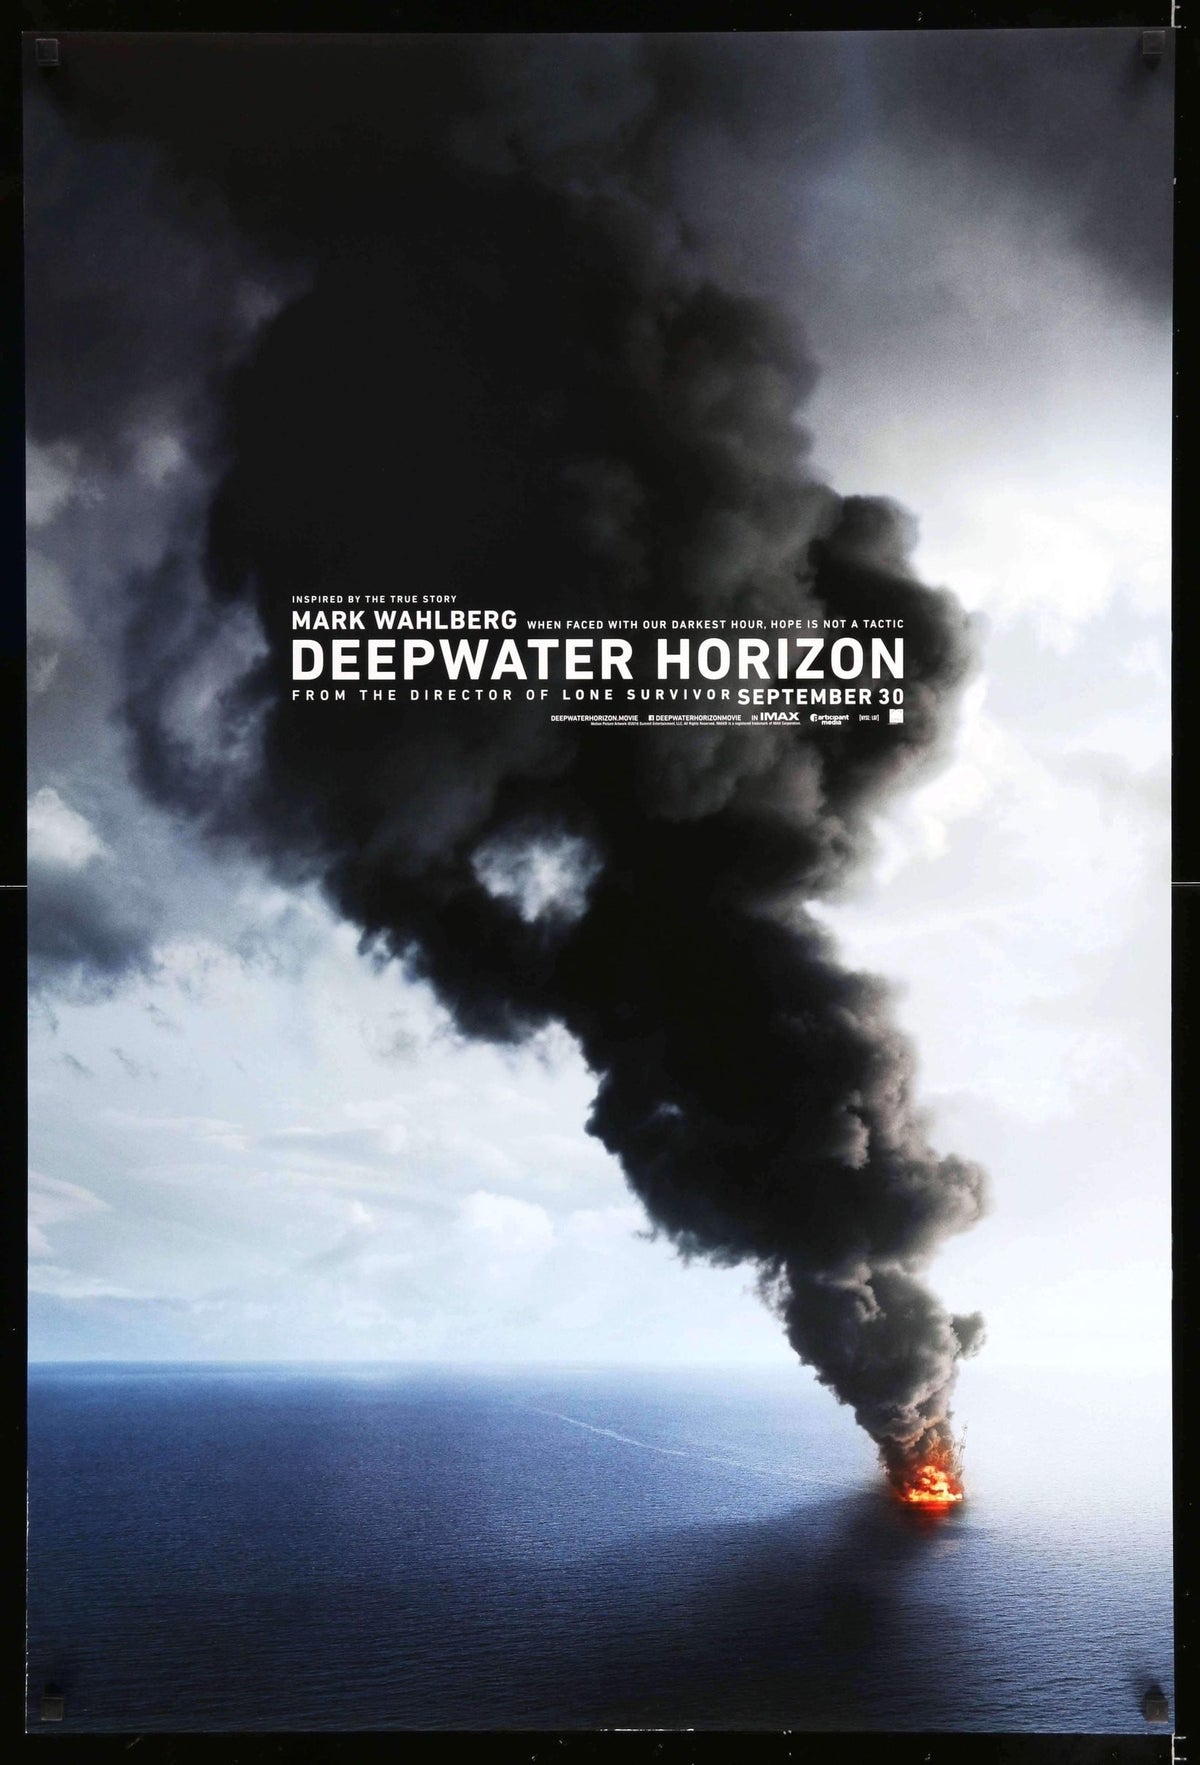 Deepwater Horizon (2016) original movie poster for sale at Original Film Art